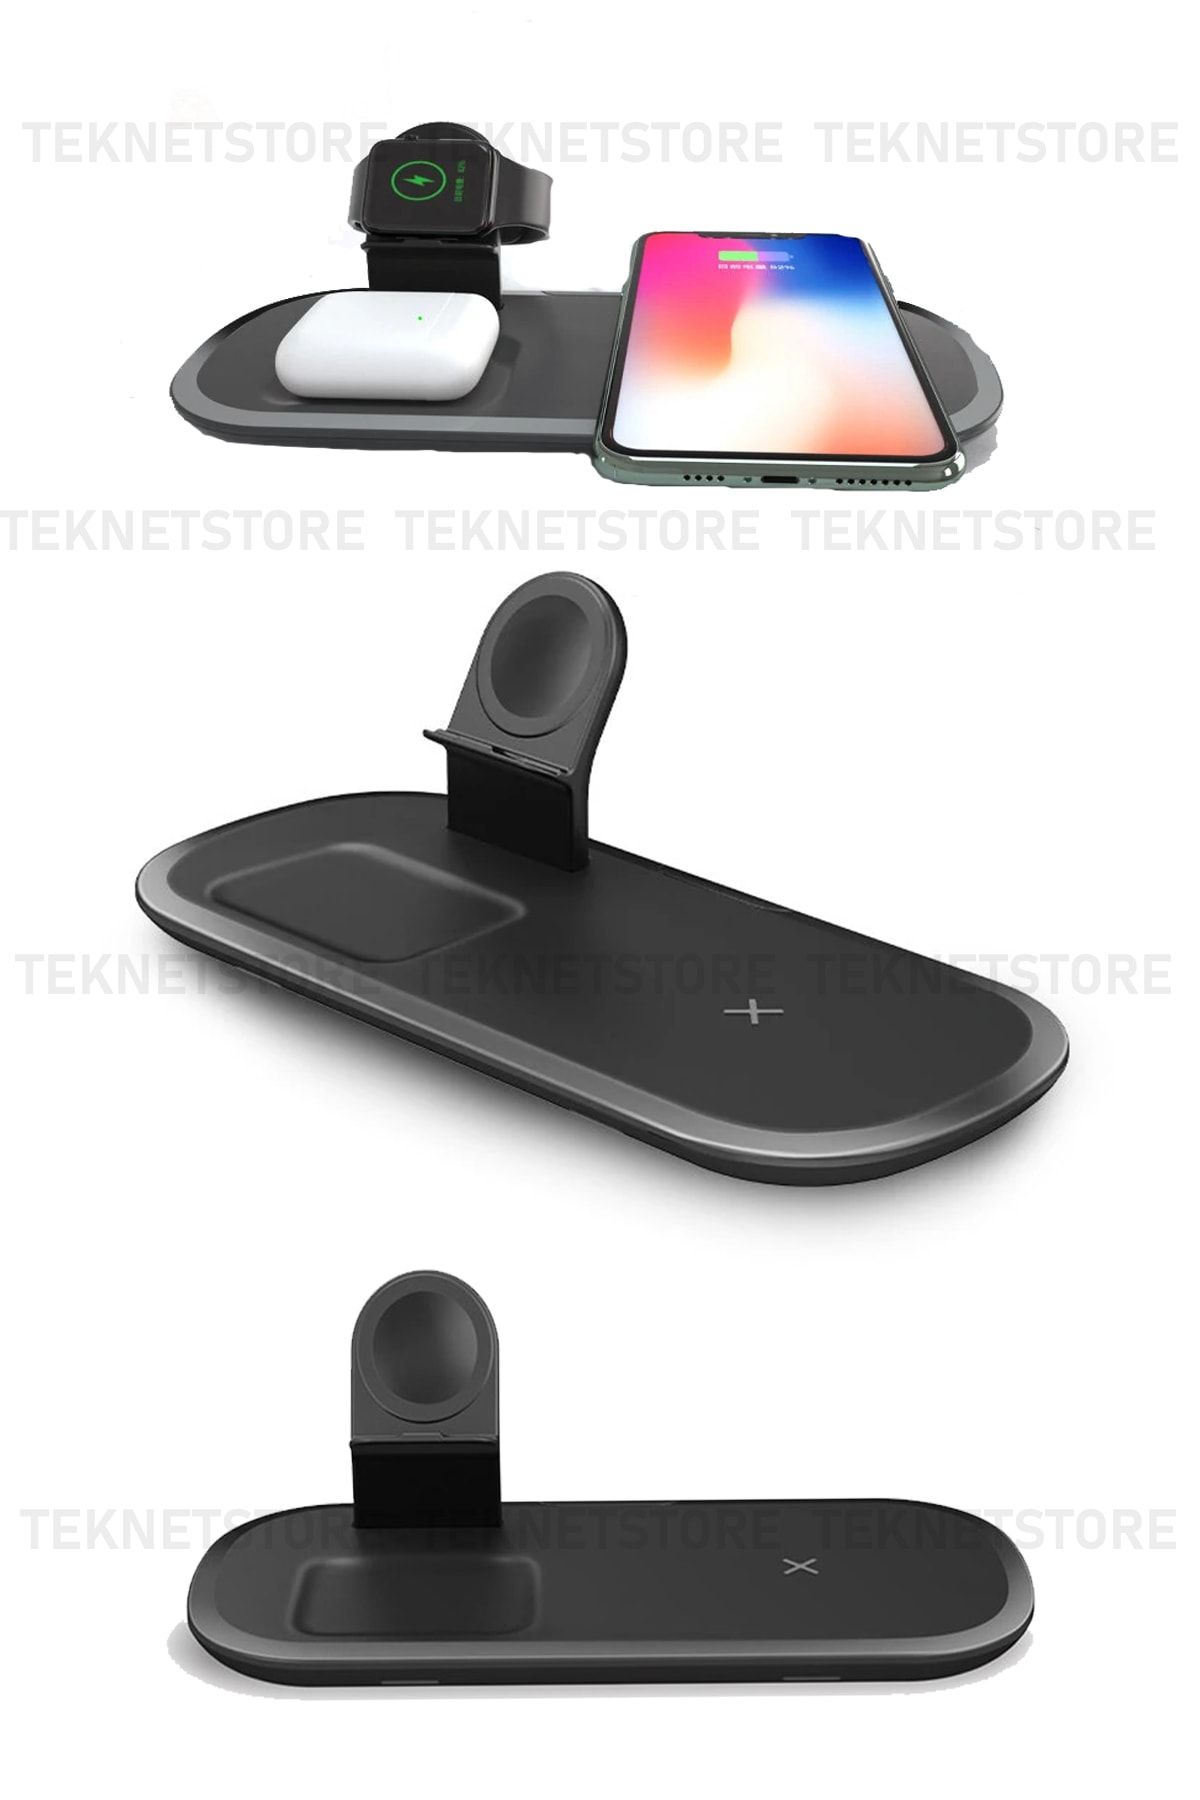 TEKNETSTORE 3 In 1 Qi Wireless Kablosuz Şarj Istasyonu 15 W Iphone Apple Watch Airpods Uyumlu Hızlı Şarj Cihazı